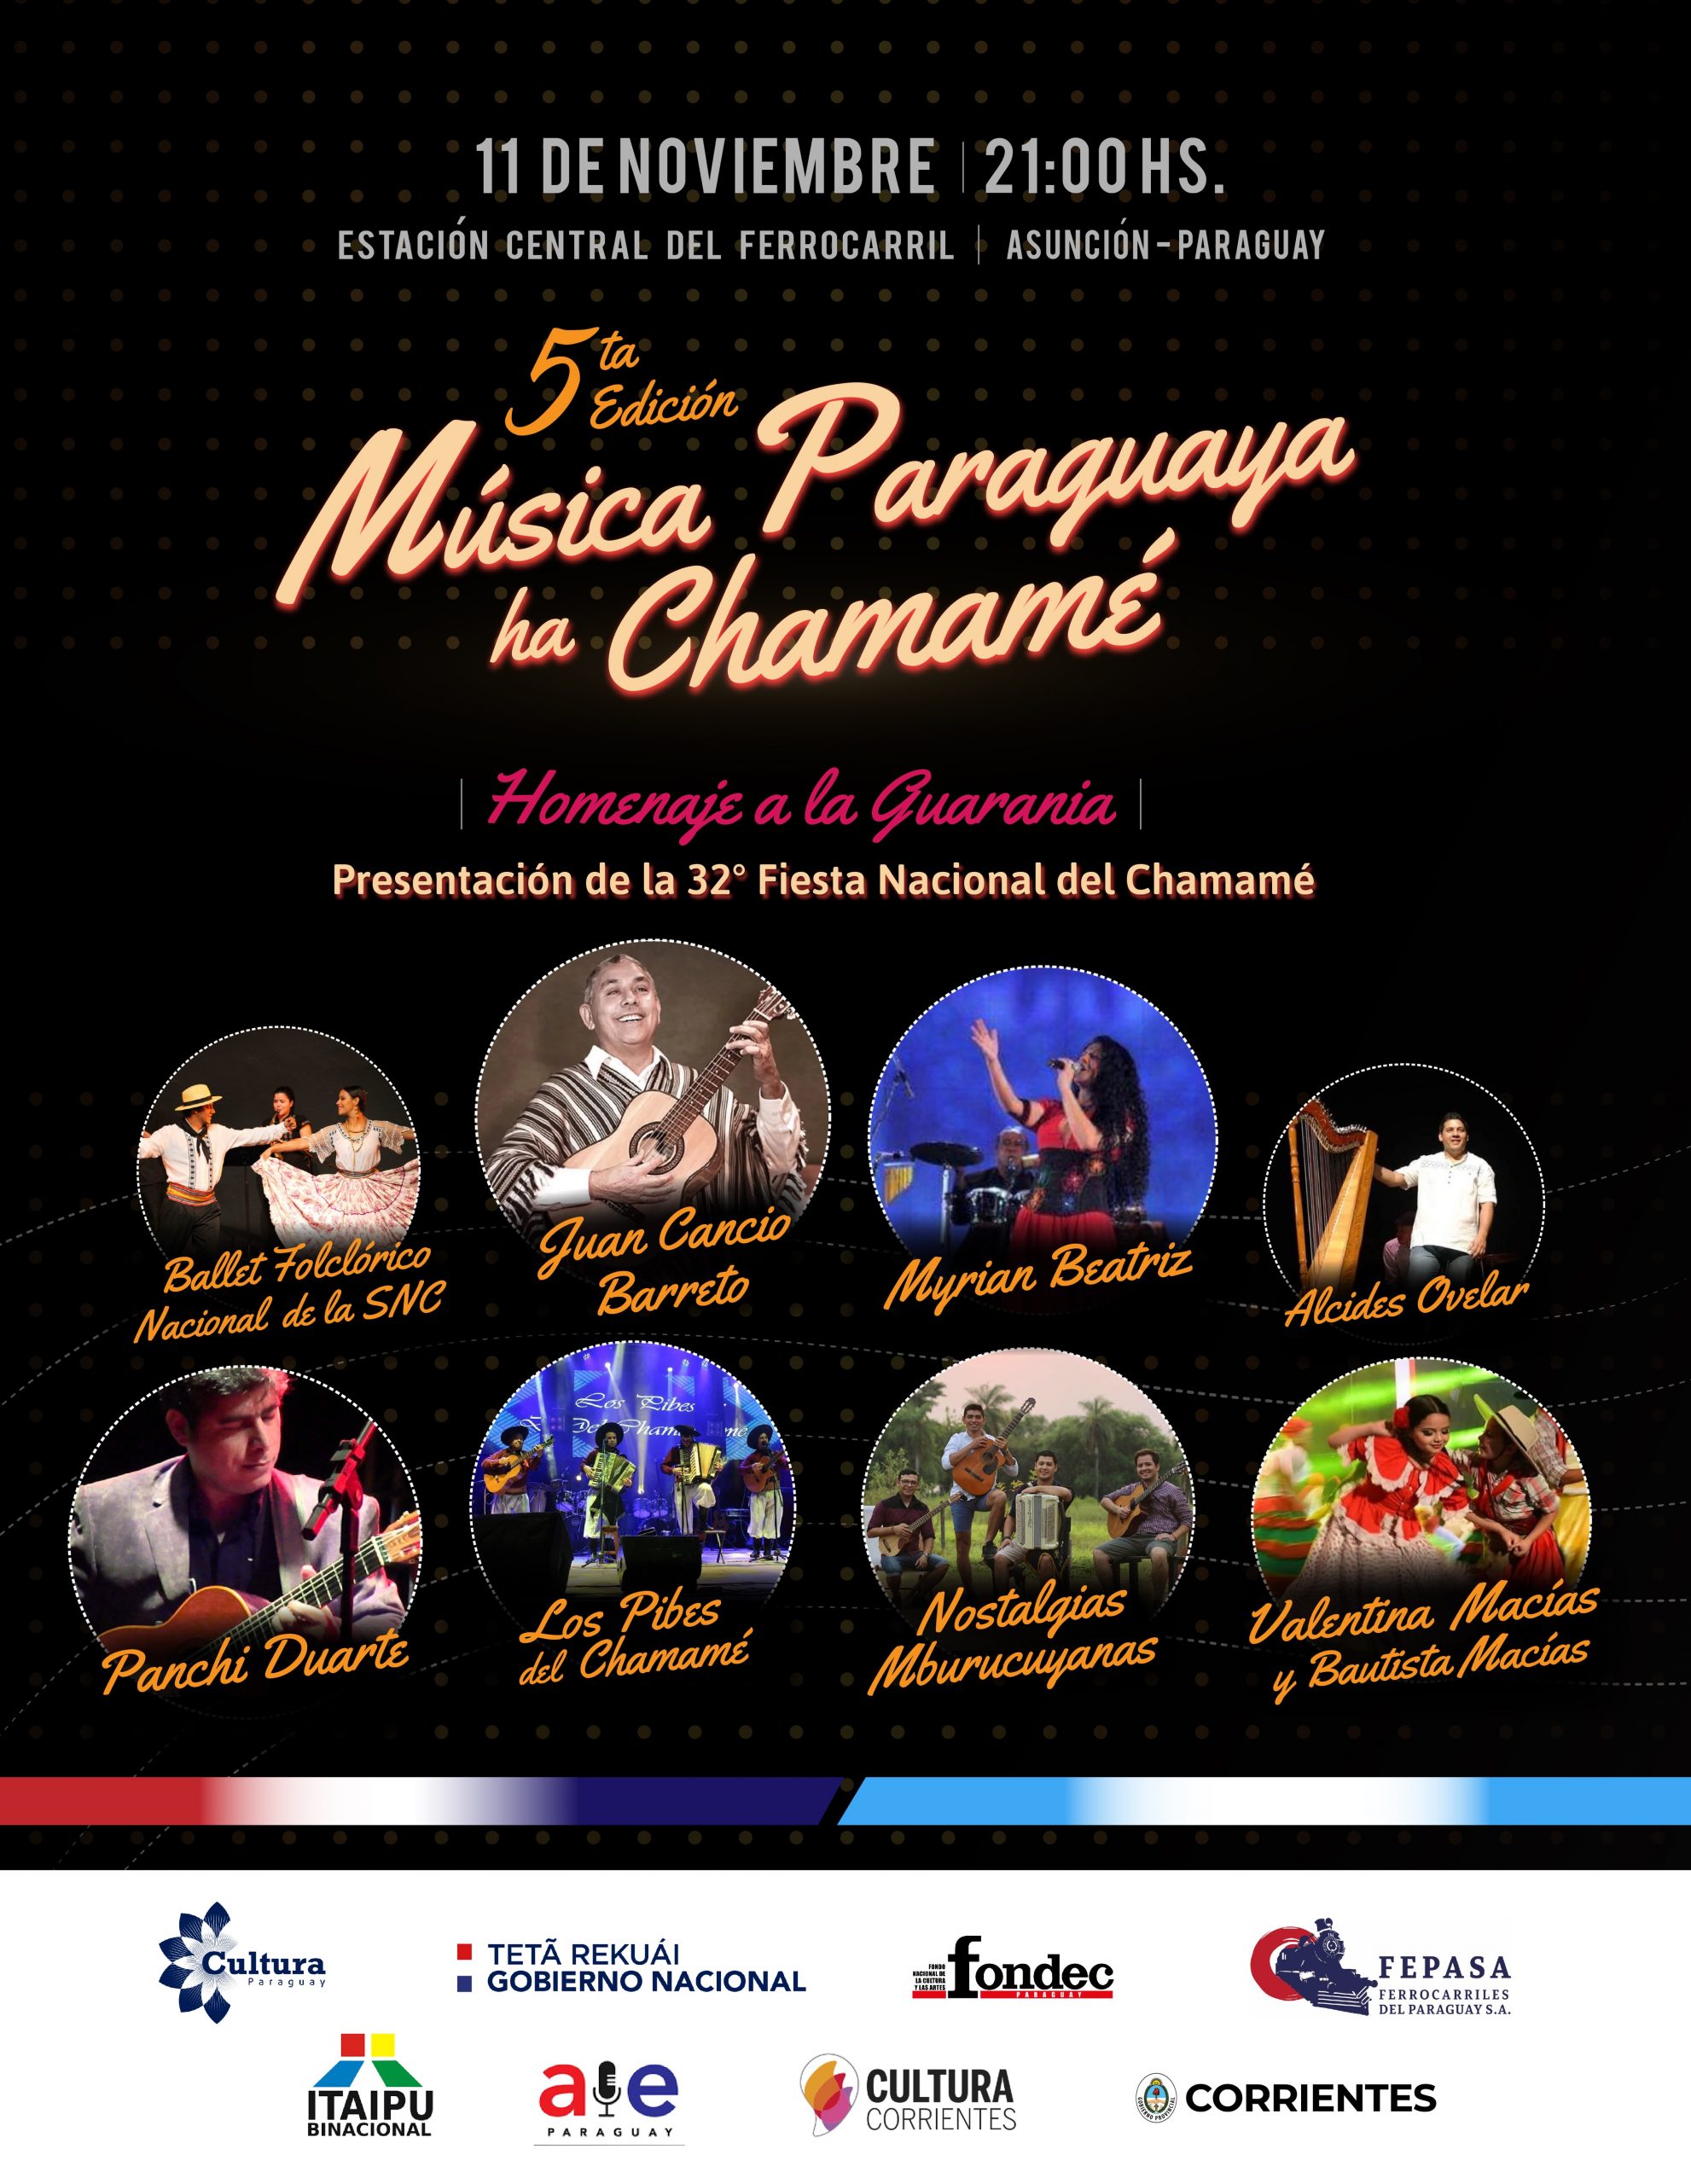 Con apoyo de Cultura se realizará la 5° edición de “Música Paraguaya ha Chamamé” imagen